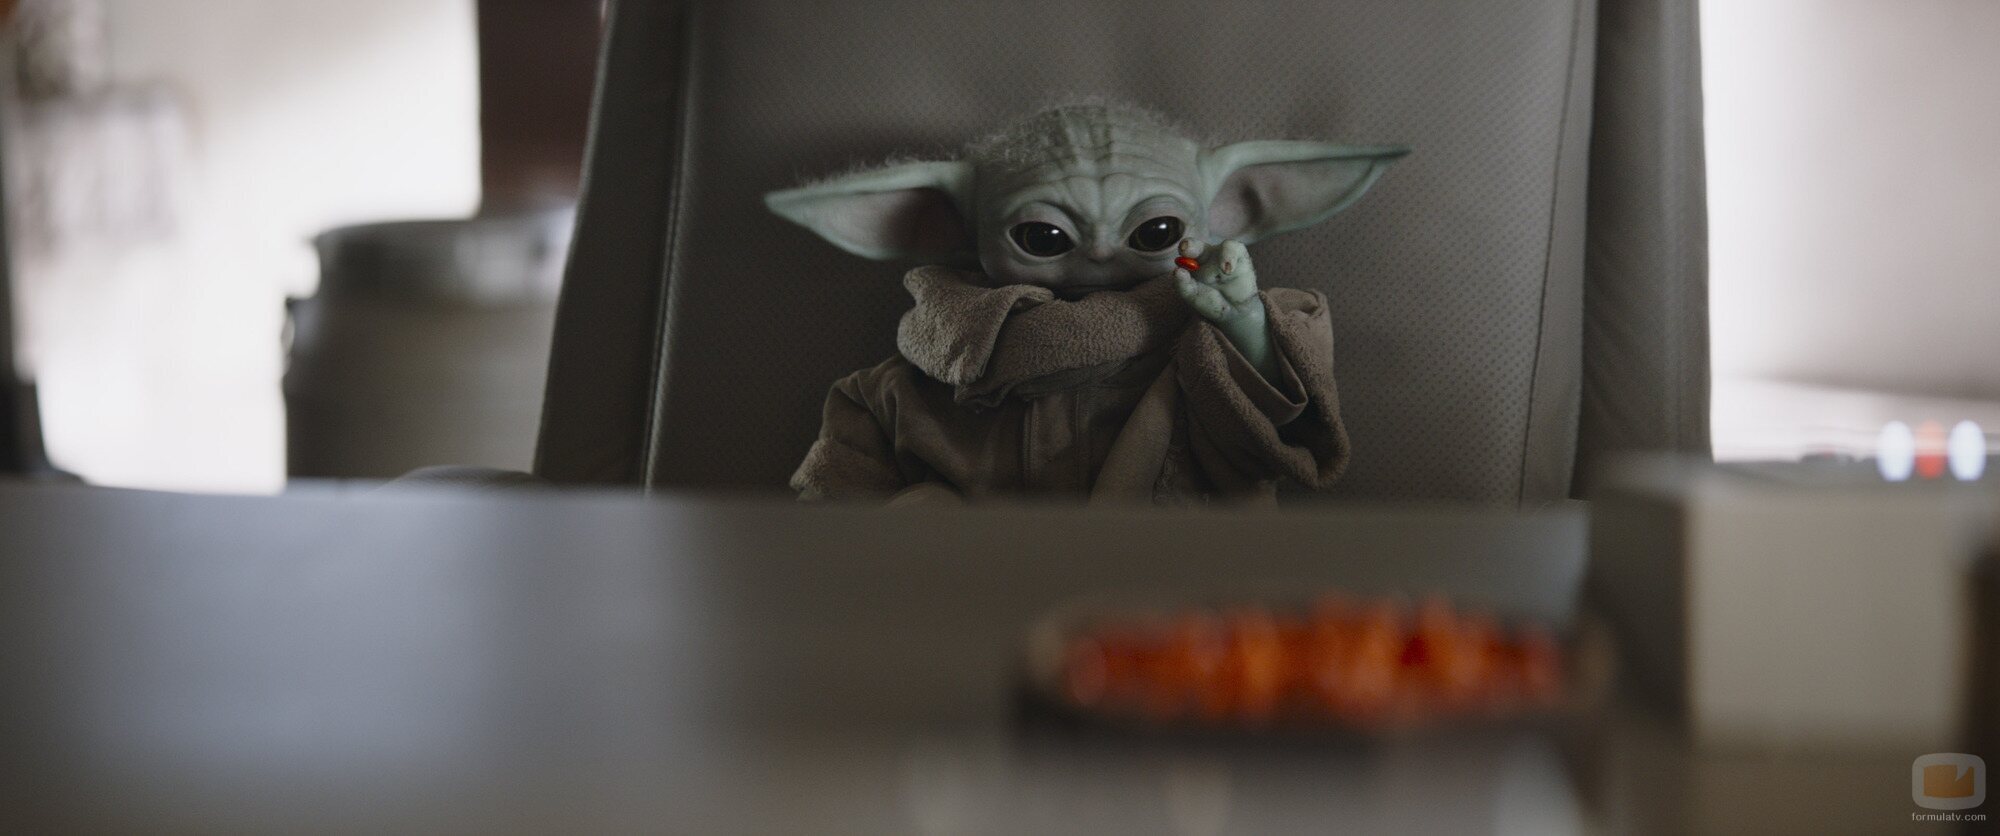 Baby Yoda utilizando la fuerza en 'The Mandalorian'